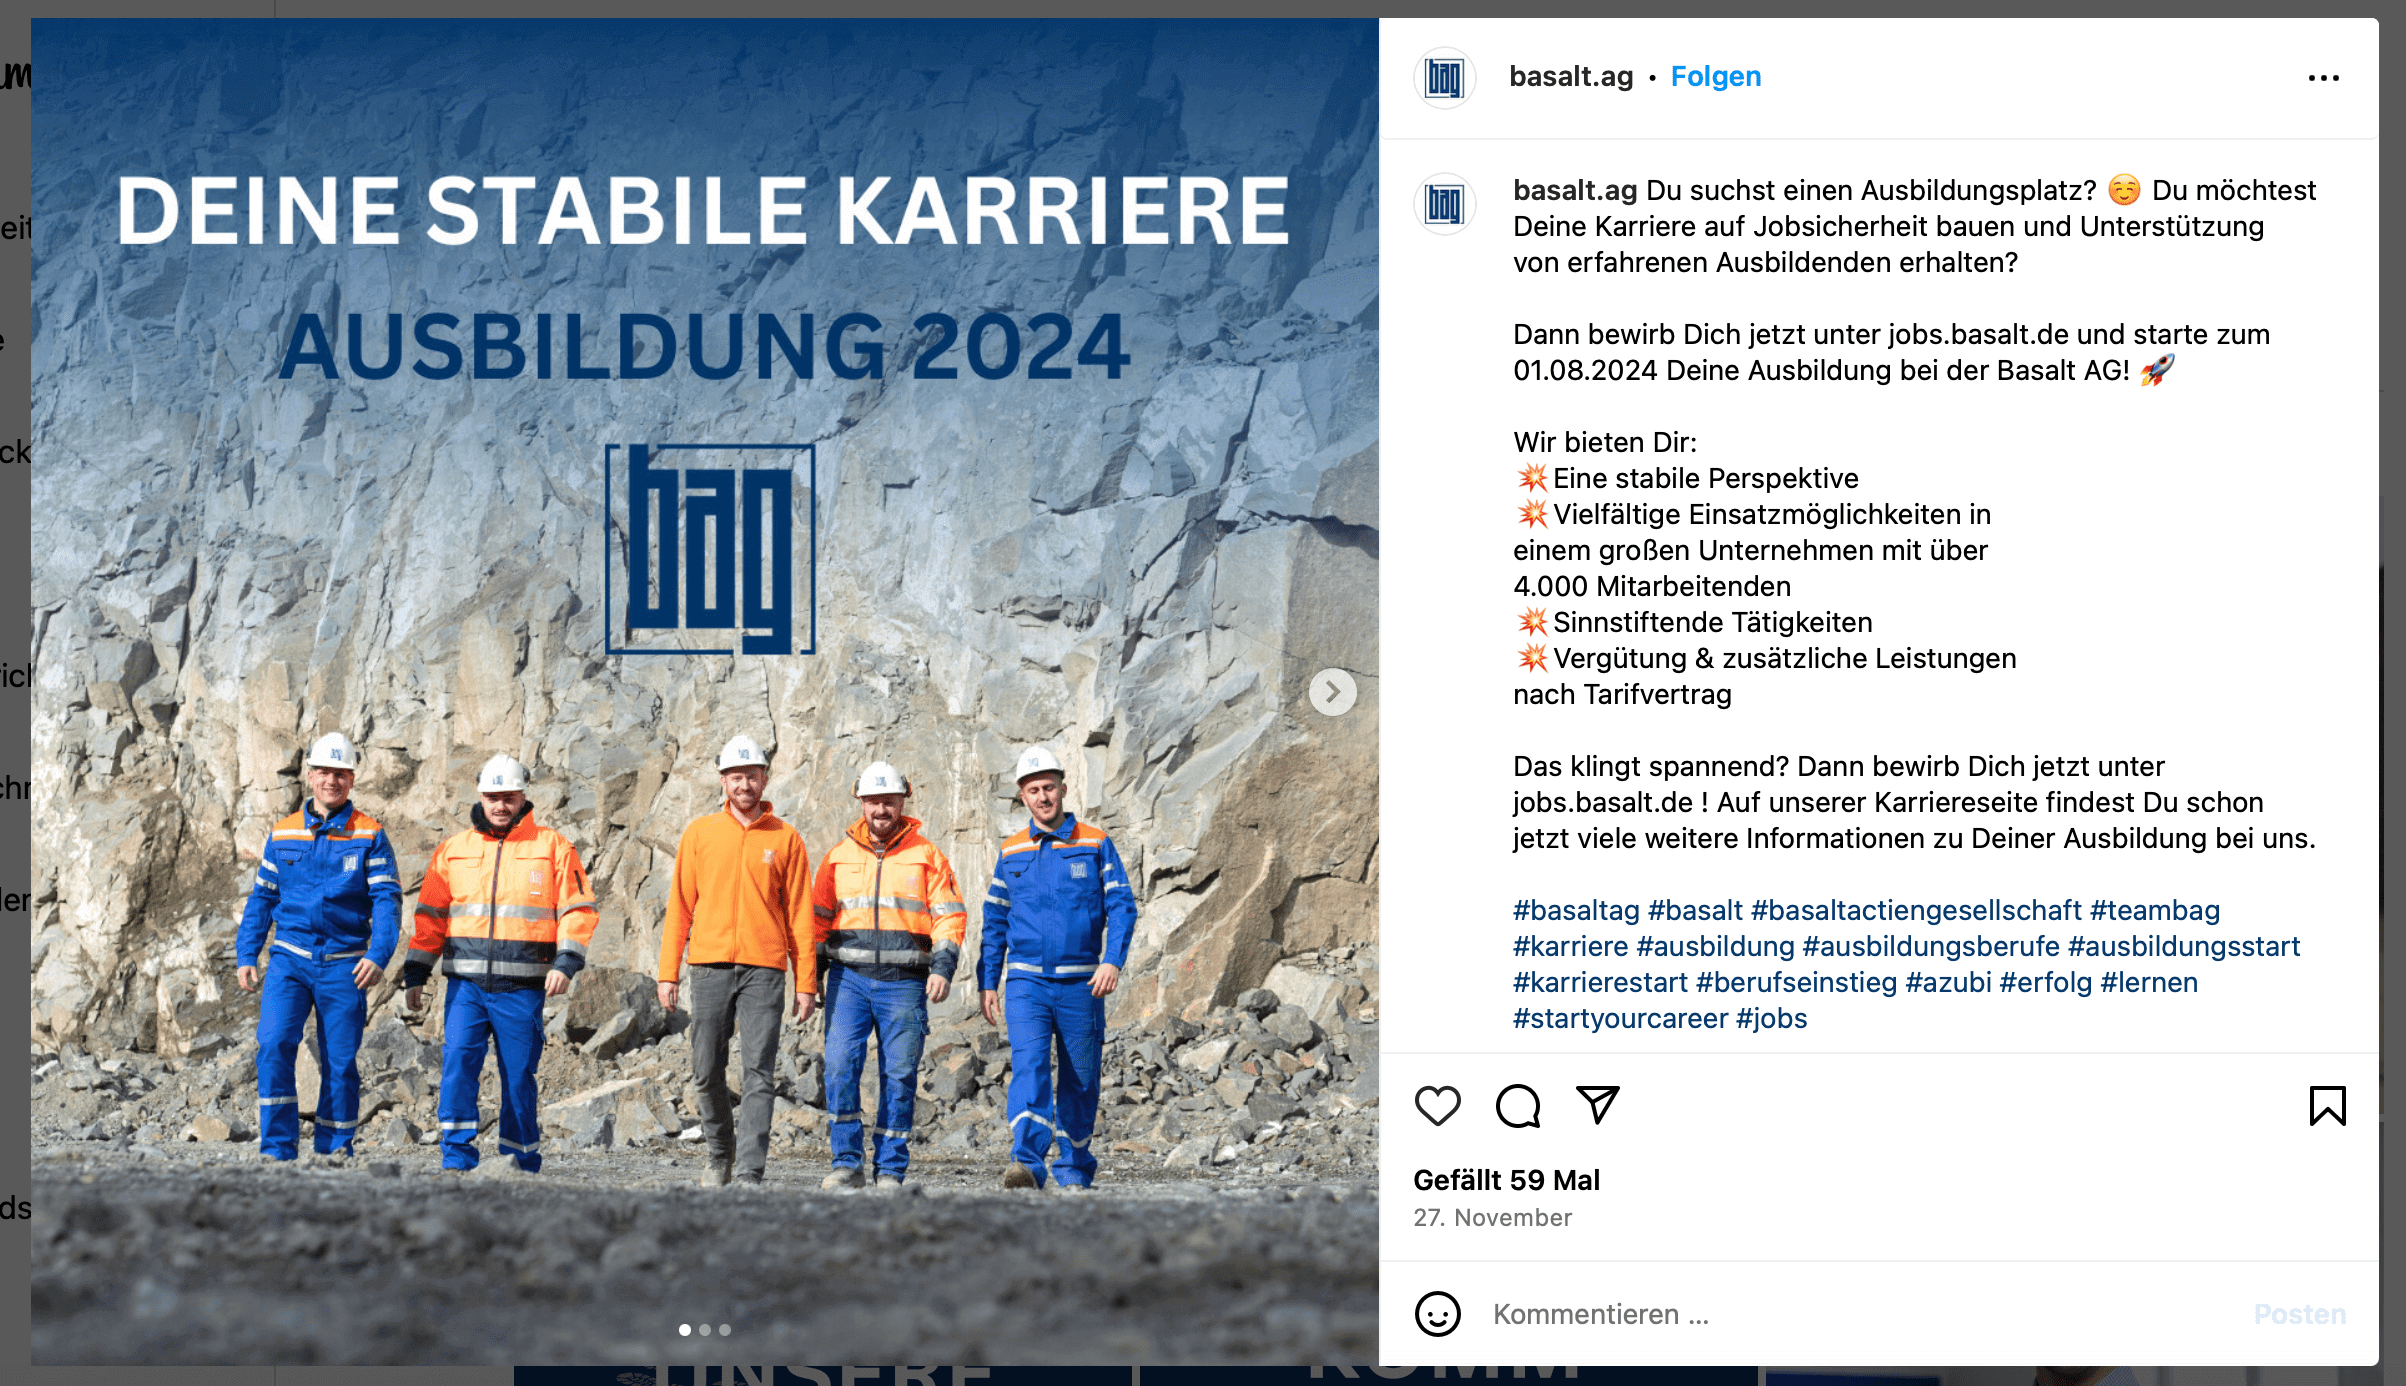 Instagram-Beitrag zum Thema stabile Karriere, mehrere Arbeiter in Steingrube